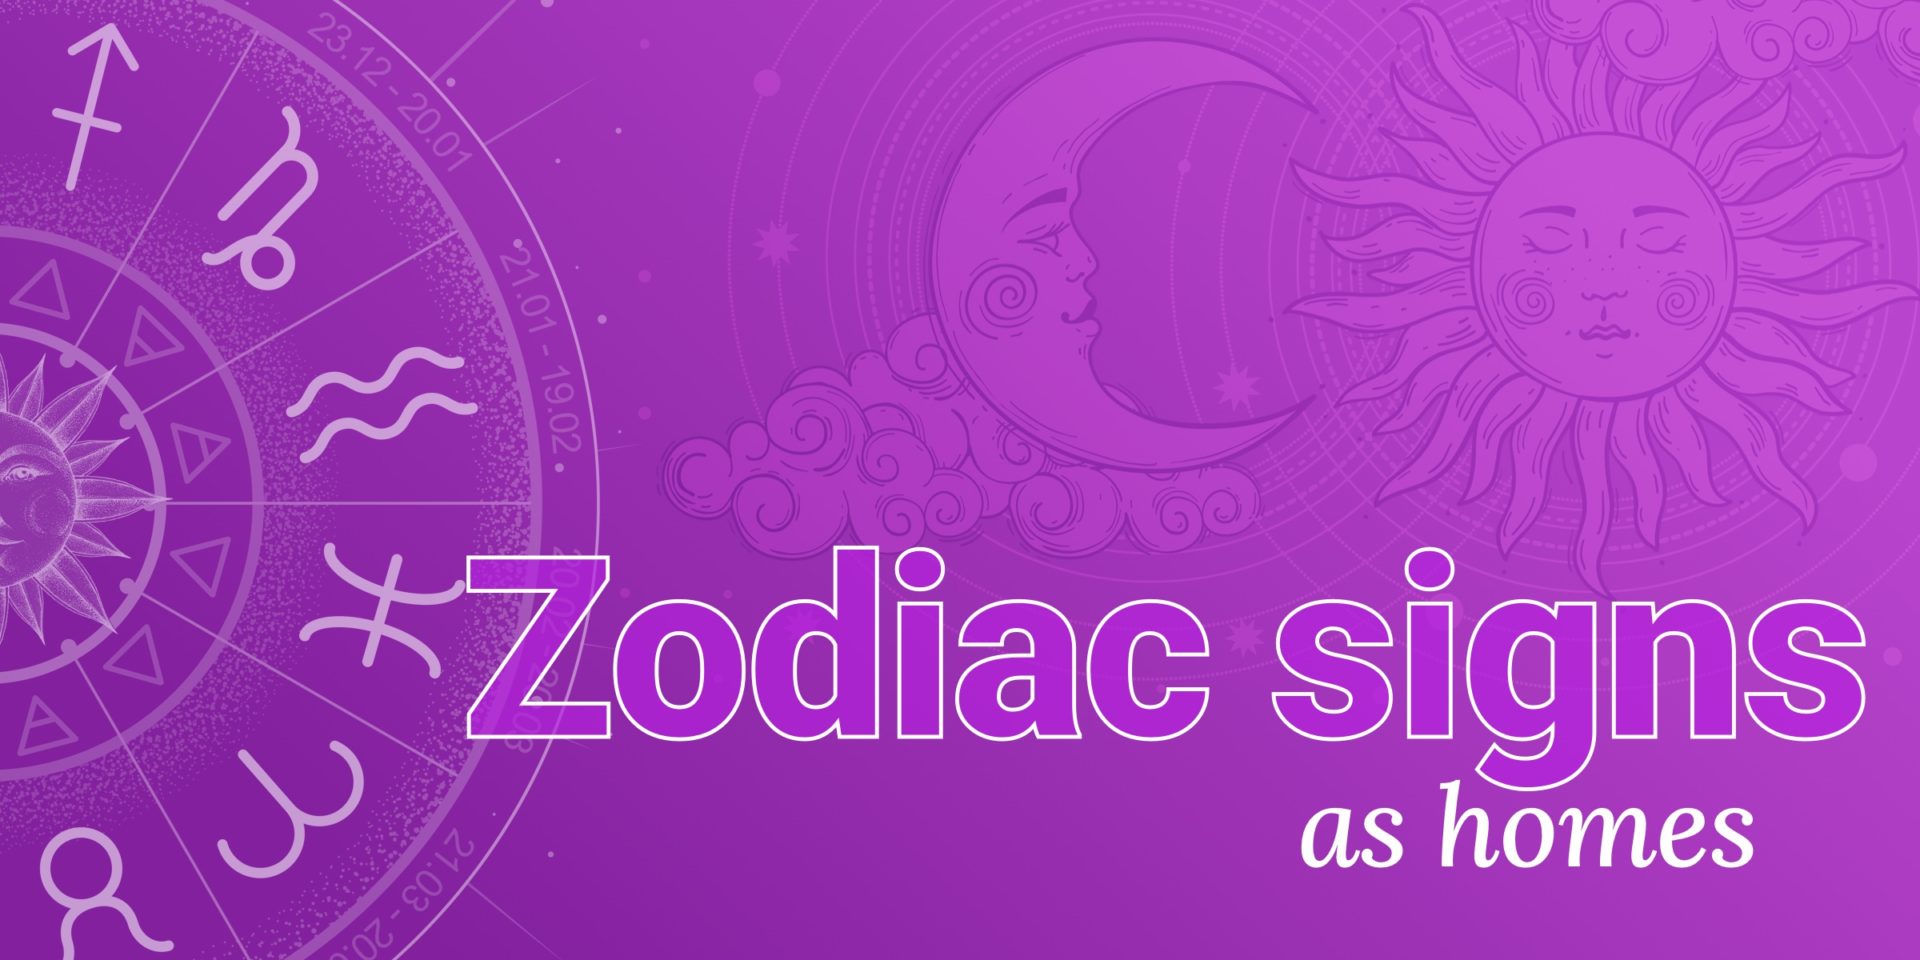 Home - Zodiac